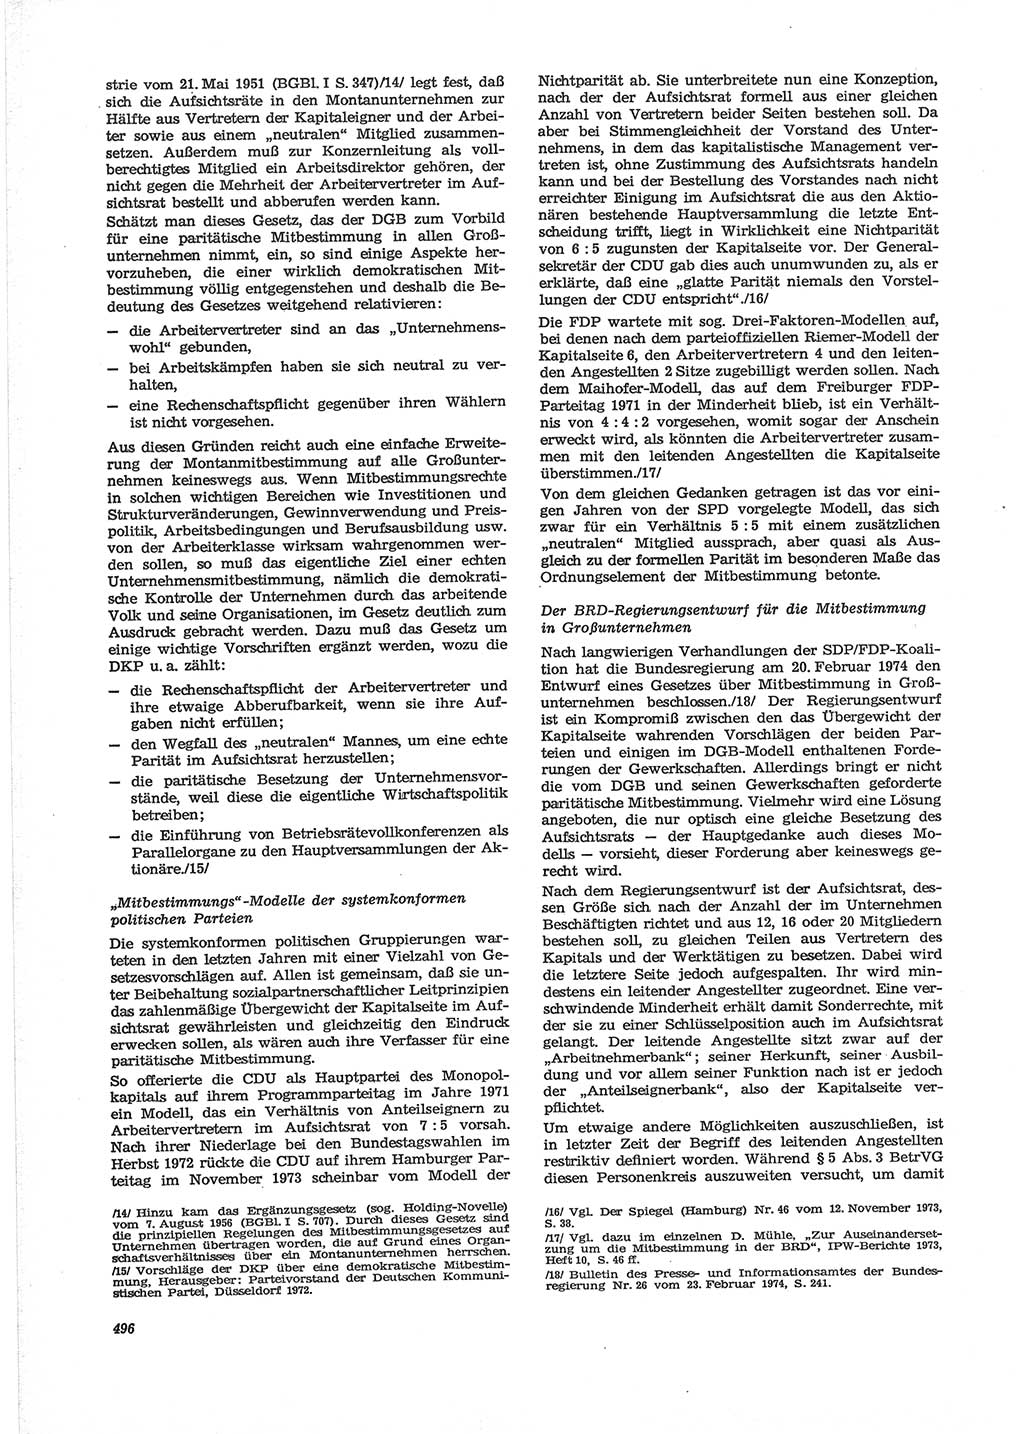 Neue Justiz (NJ), Zeitschrift für Recht und Rechtswissenschaft [Deutsche Demokratische Republik (DDR)], 28. Jahrgang 1974, Seite 496 (NJ DDR 1974, S. 496)